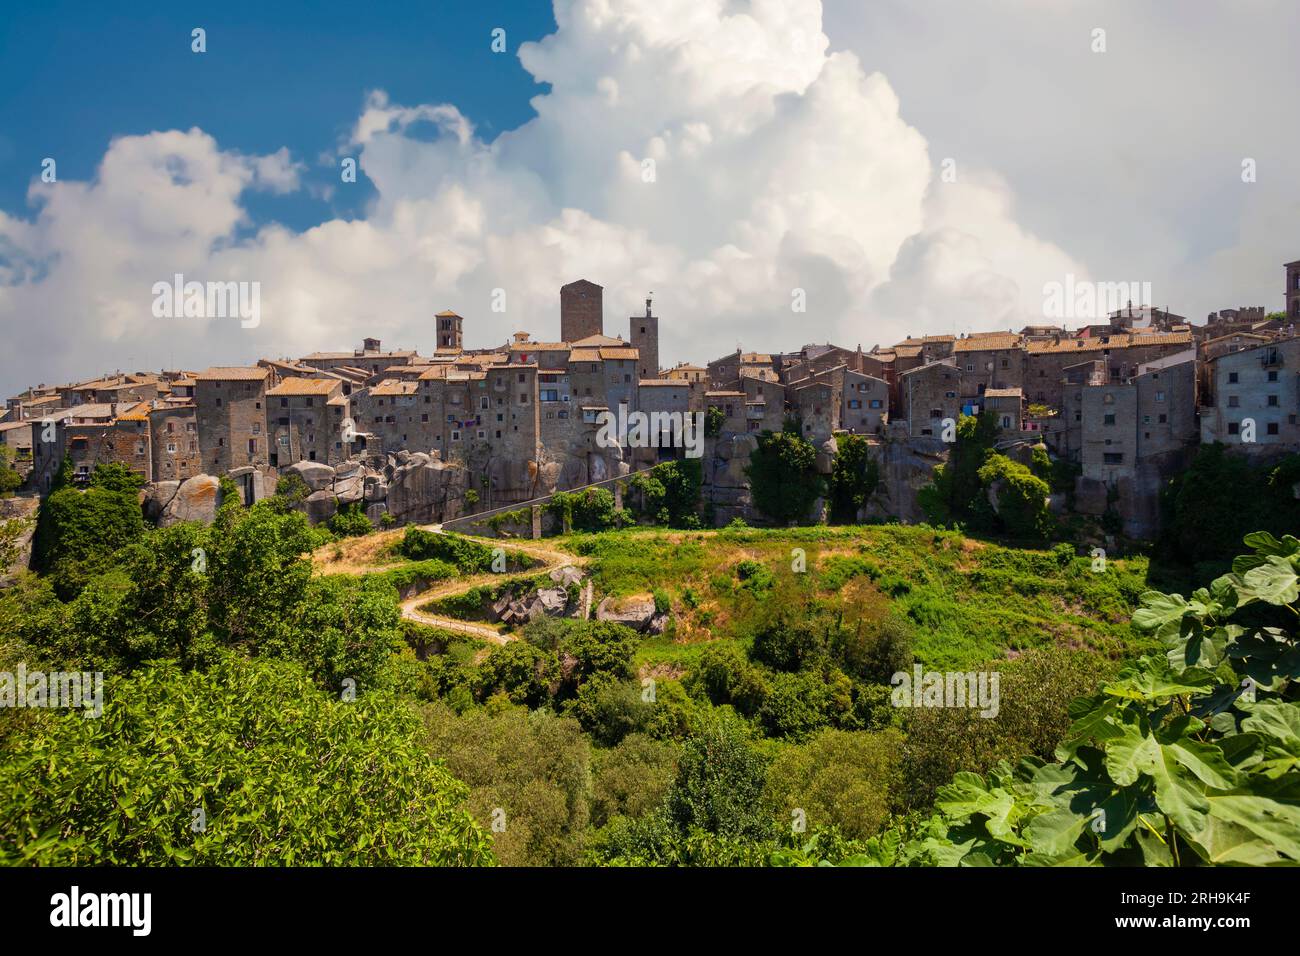 Fangen Sie den zeitlosen Reiz des Dorfes Vitorchiano mit rustikalen Residenzen, majestätischen Kirchen und ruhigen Landschaften ein. Stockfoto